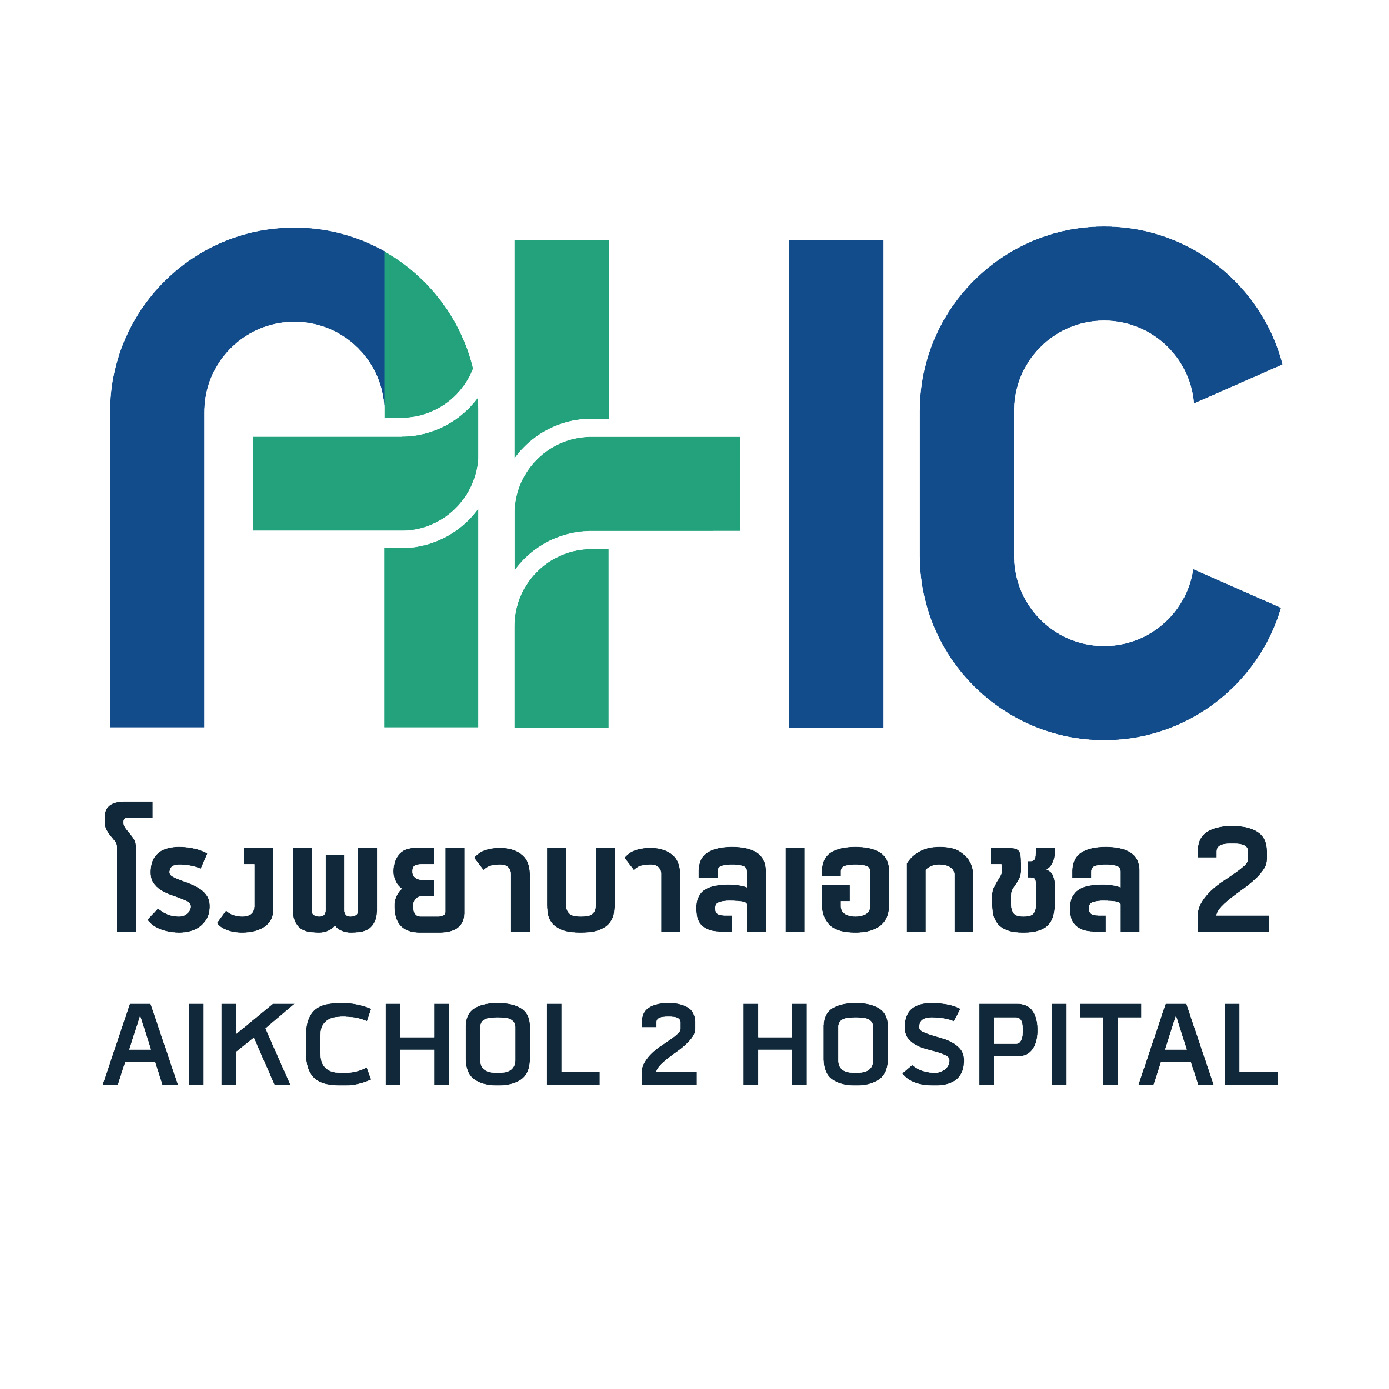 Aikchol 2 Hospital 01